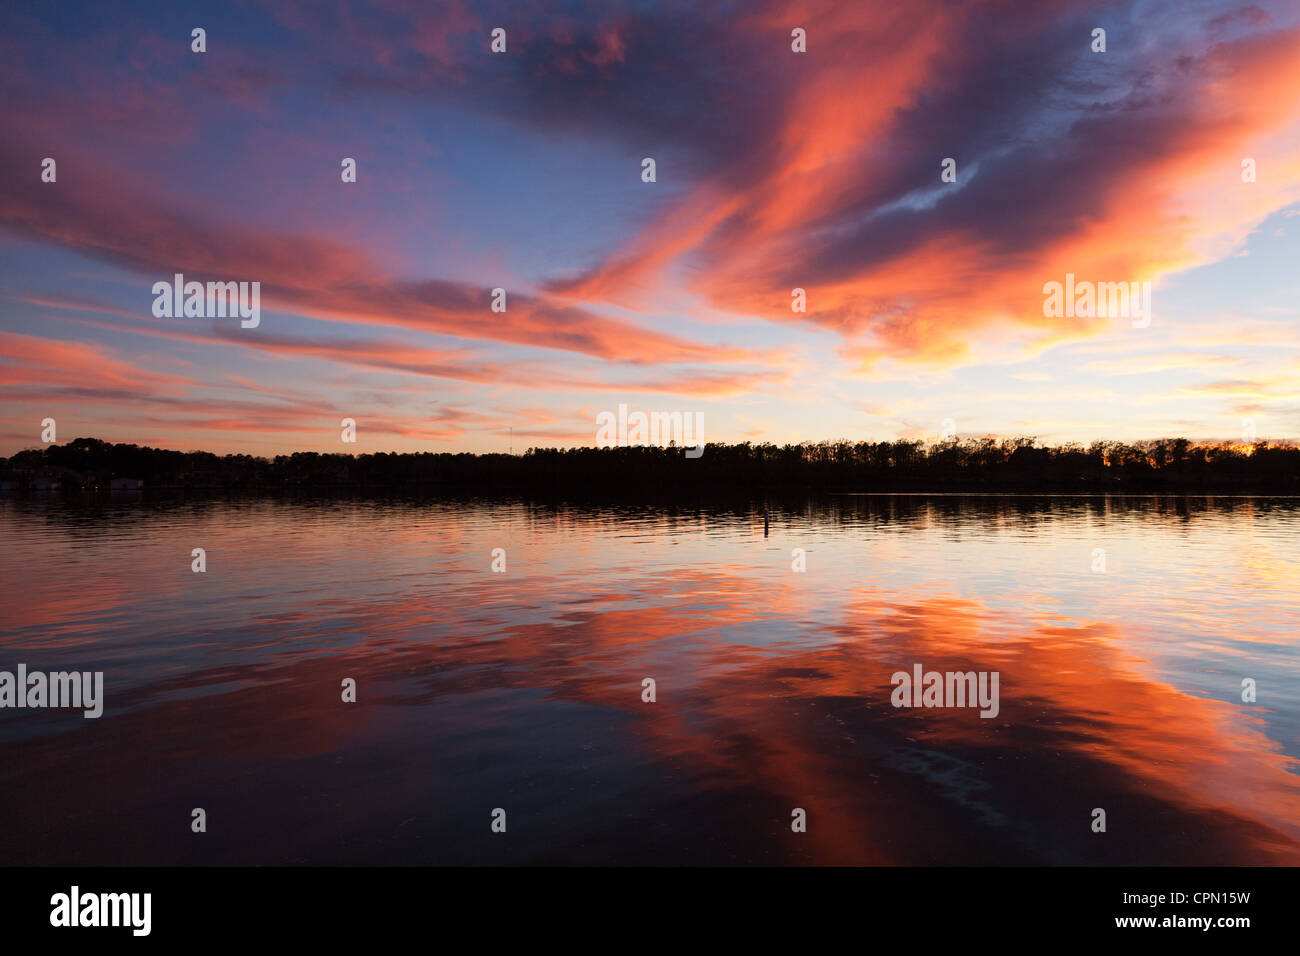 Conroe, Texas: Die stillen Wasser des Lake Conroe reflektieren einen flammenden Himmel am Ende des Tages. Stockfoto